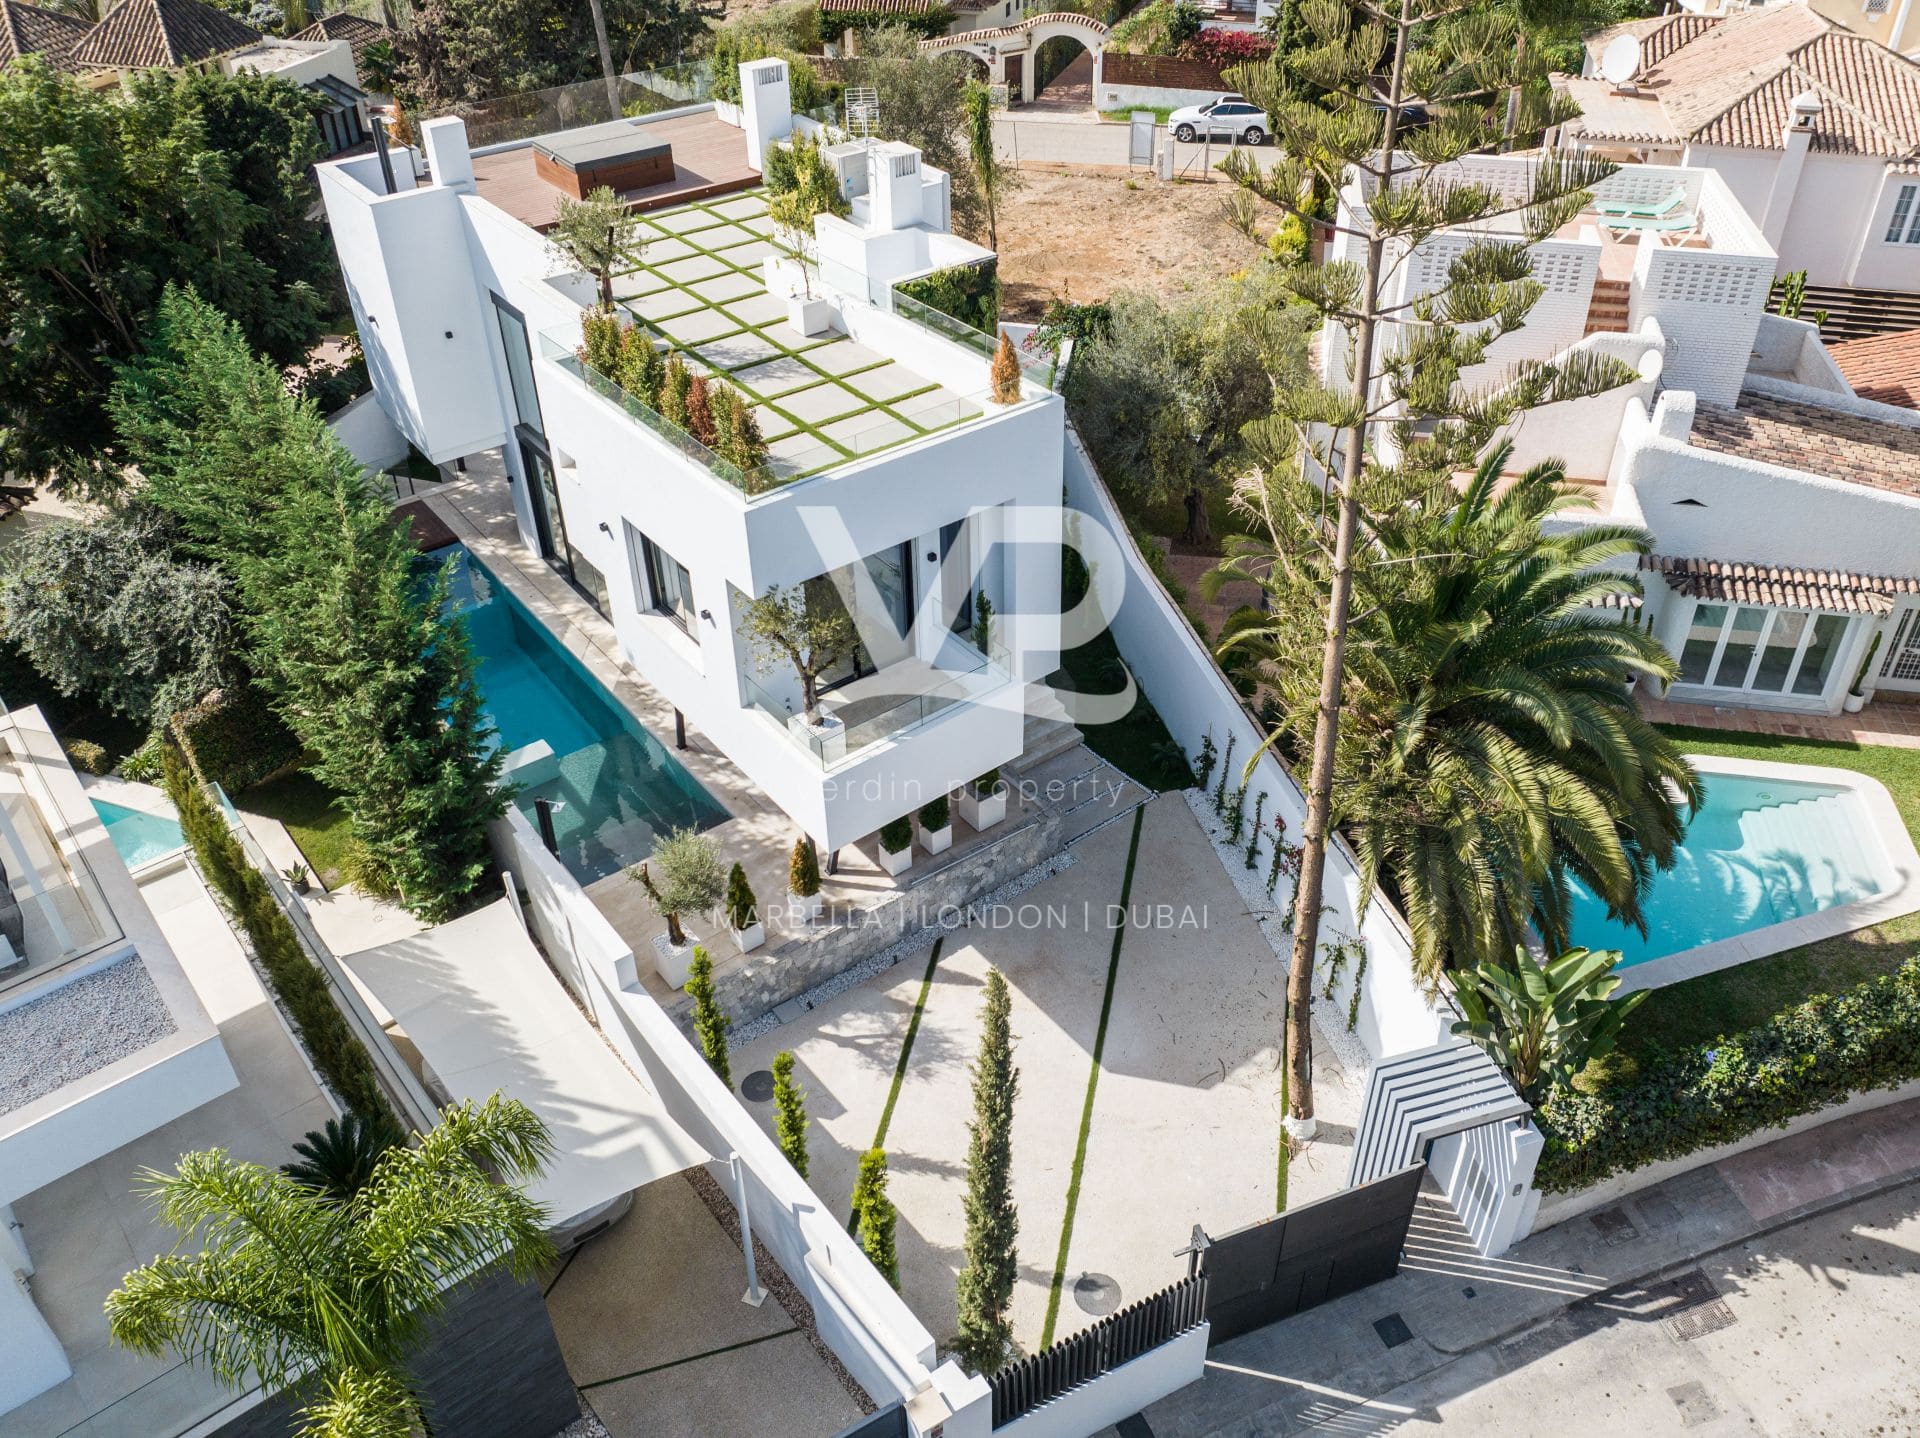 Villa Cypress, modern beachside villa